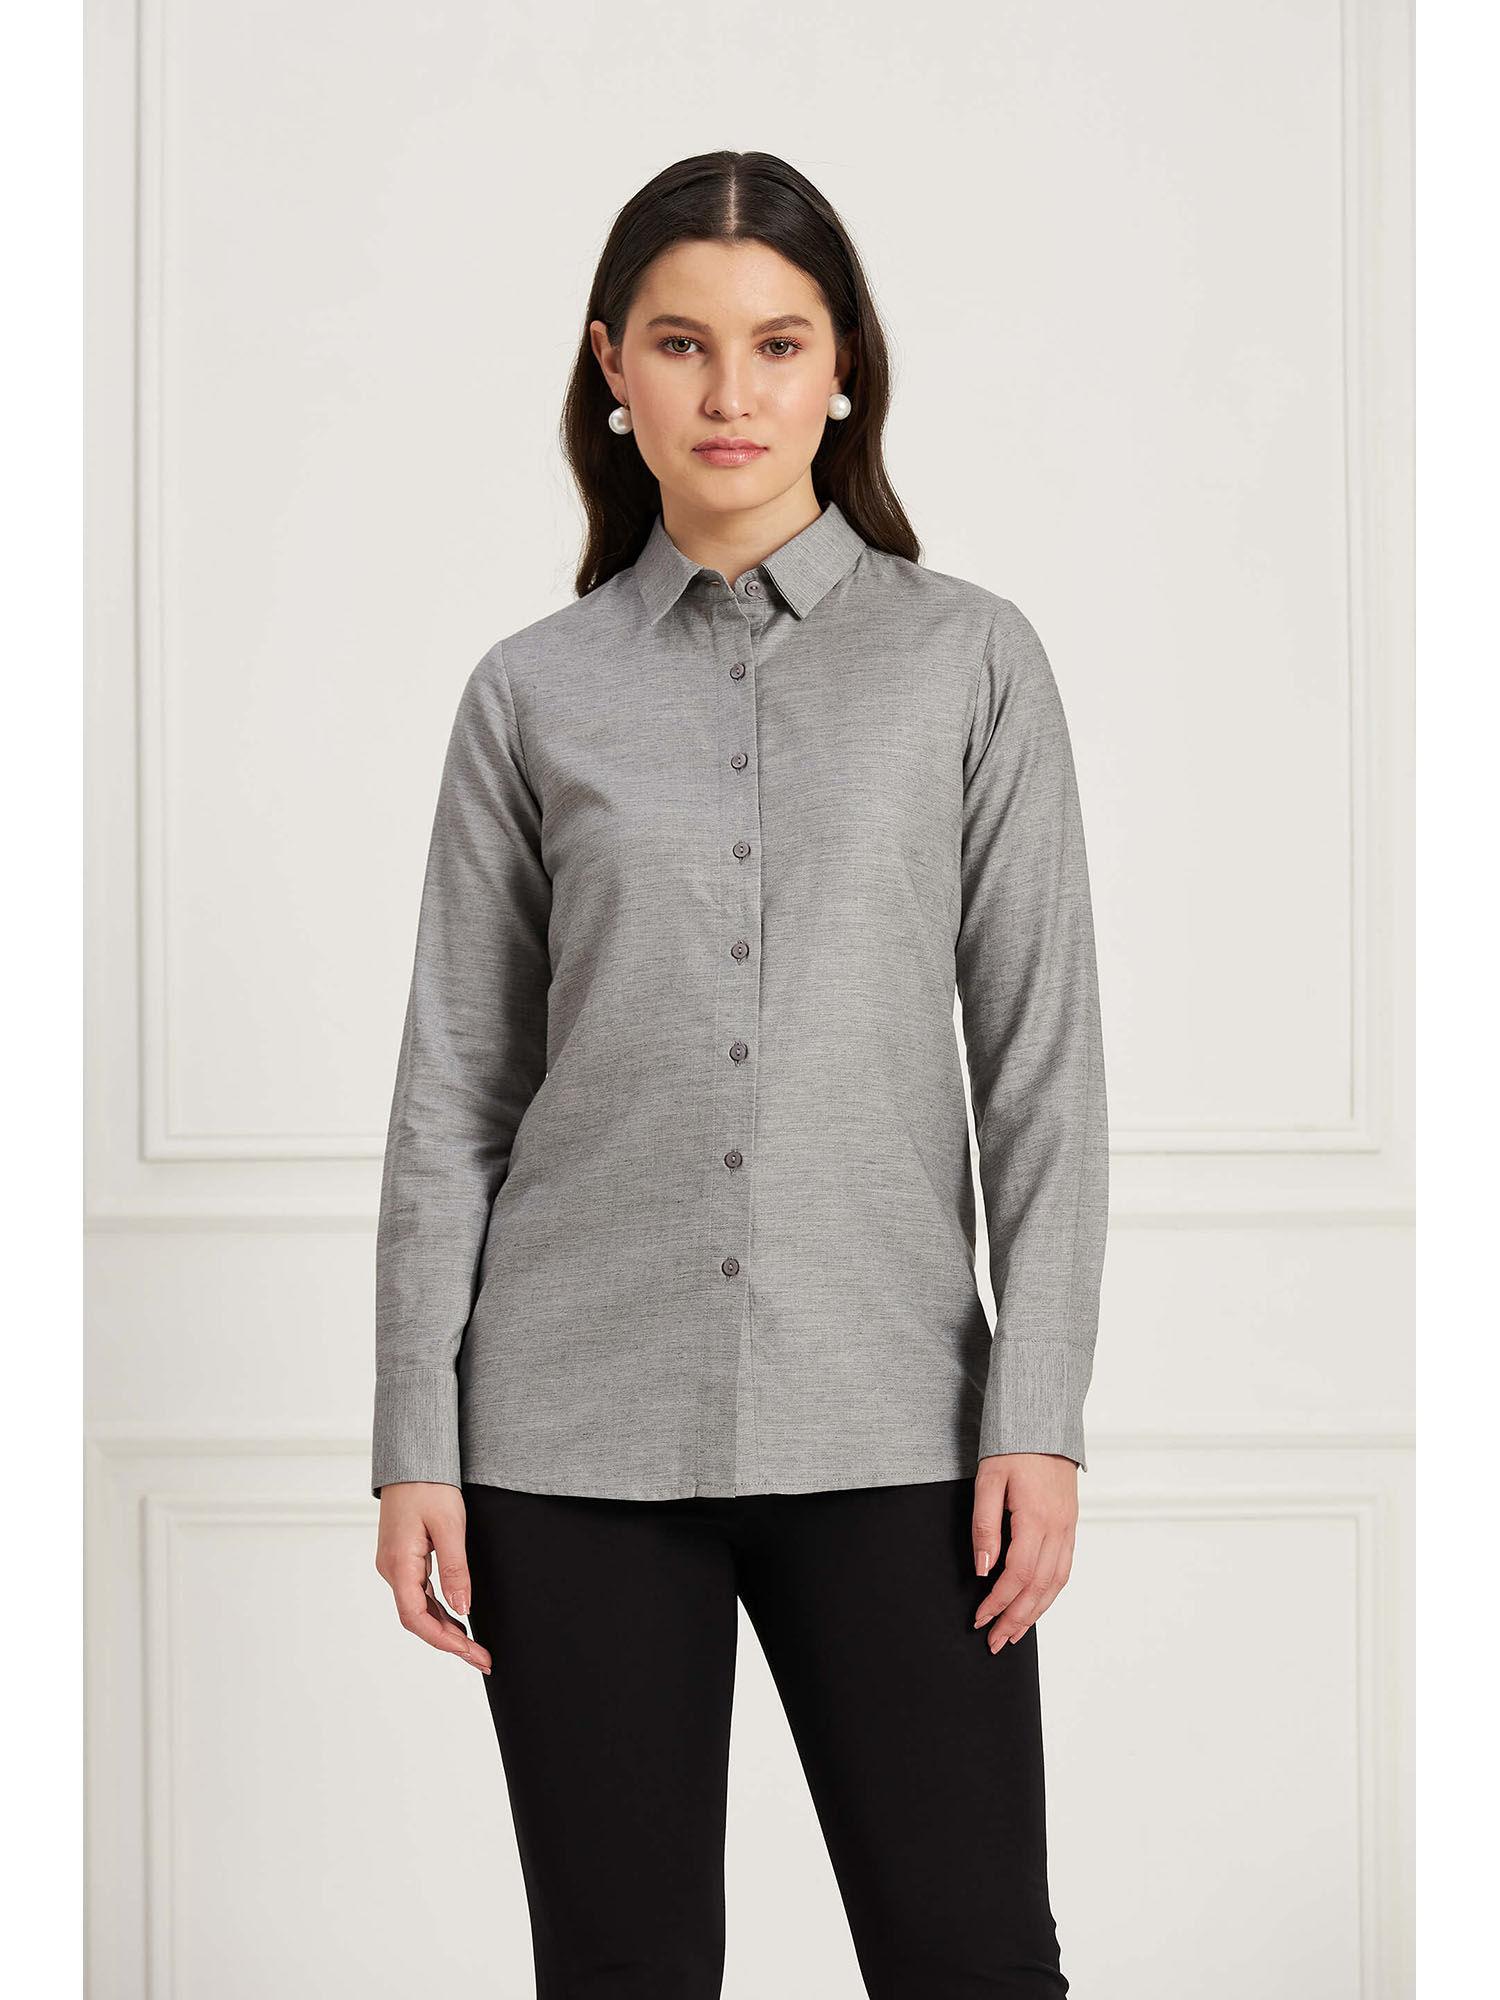 light grey button down shirt